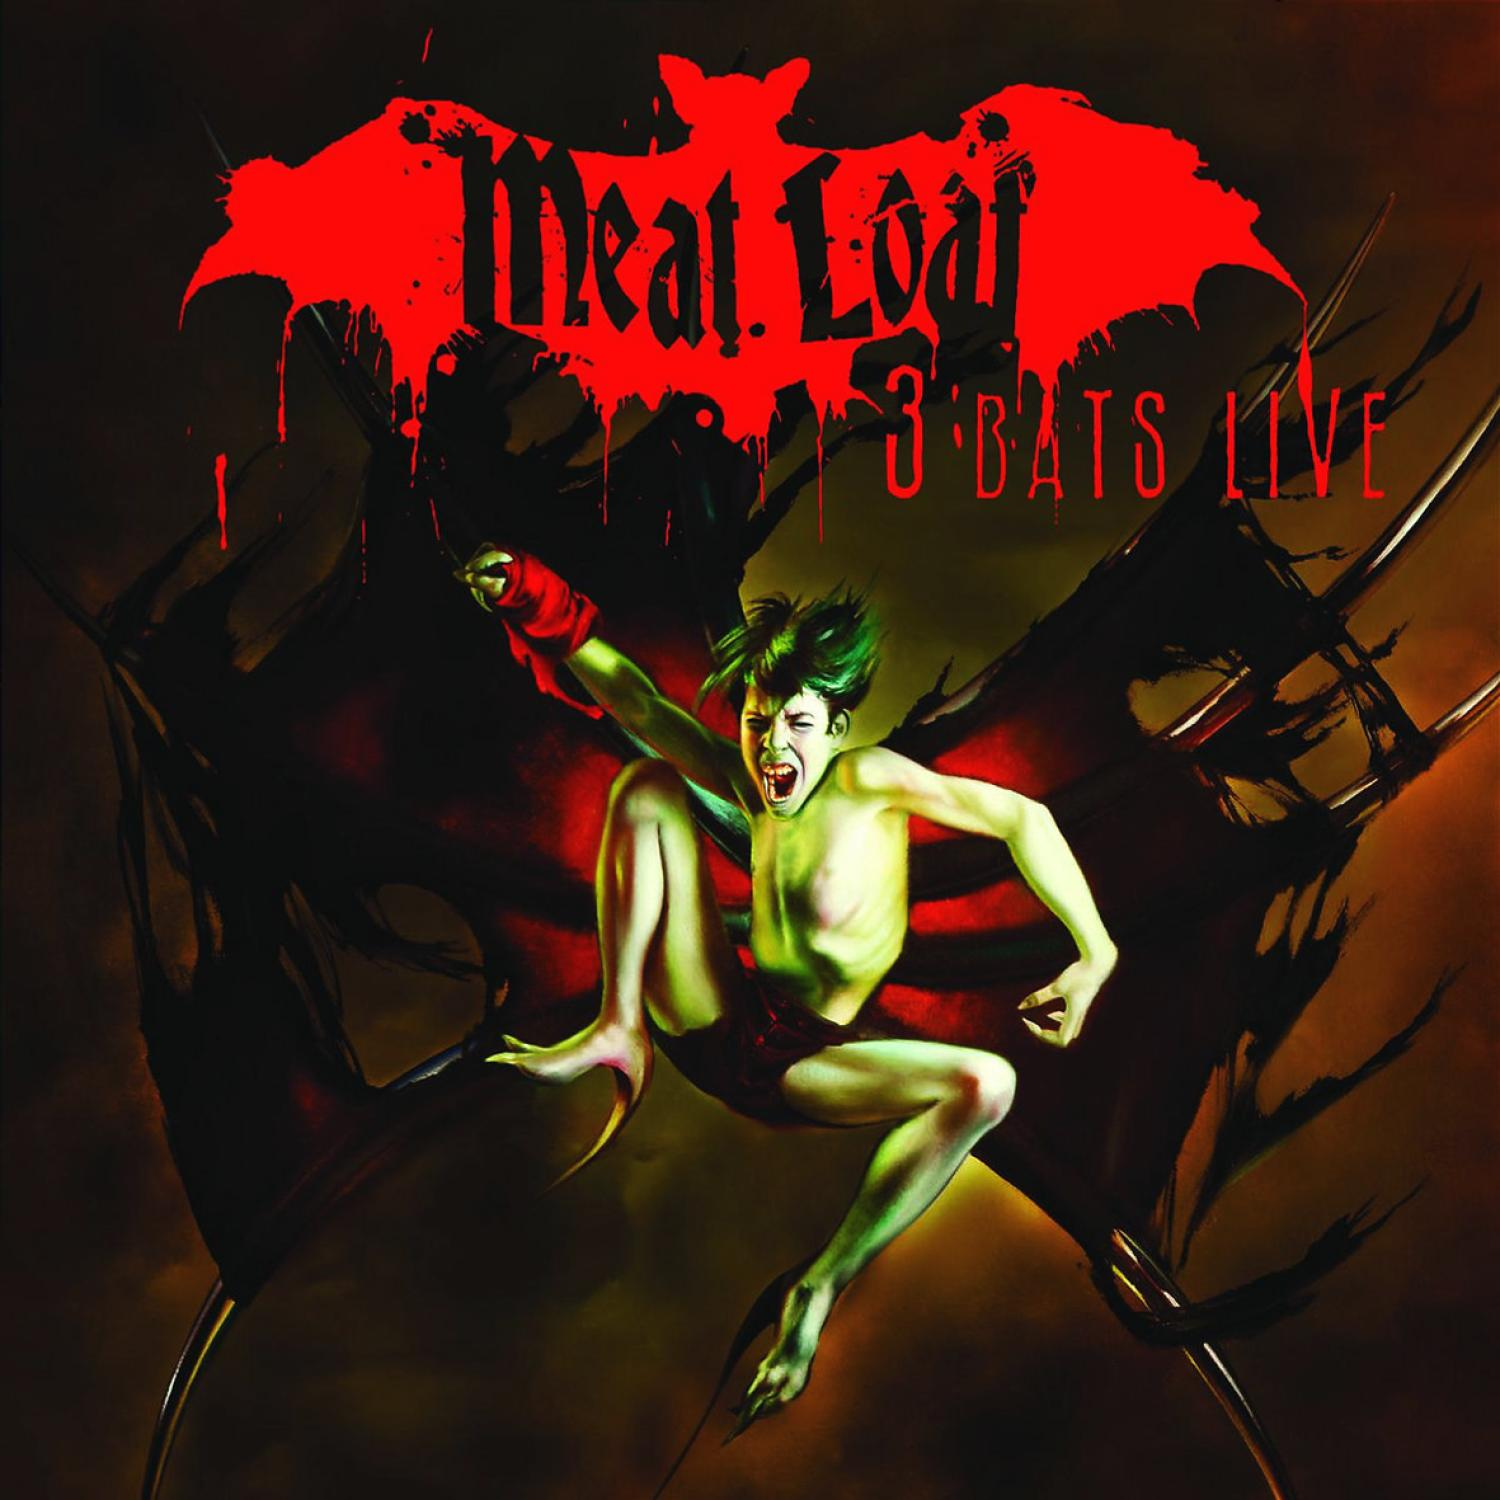 (CD) 3 Loaf - - Meat Live Bats